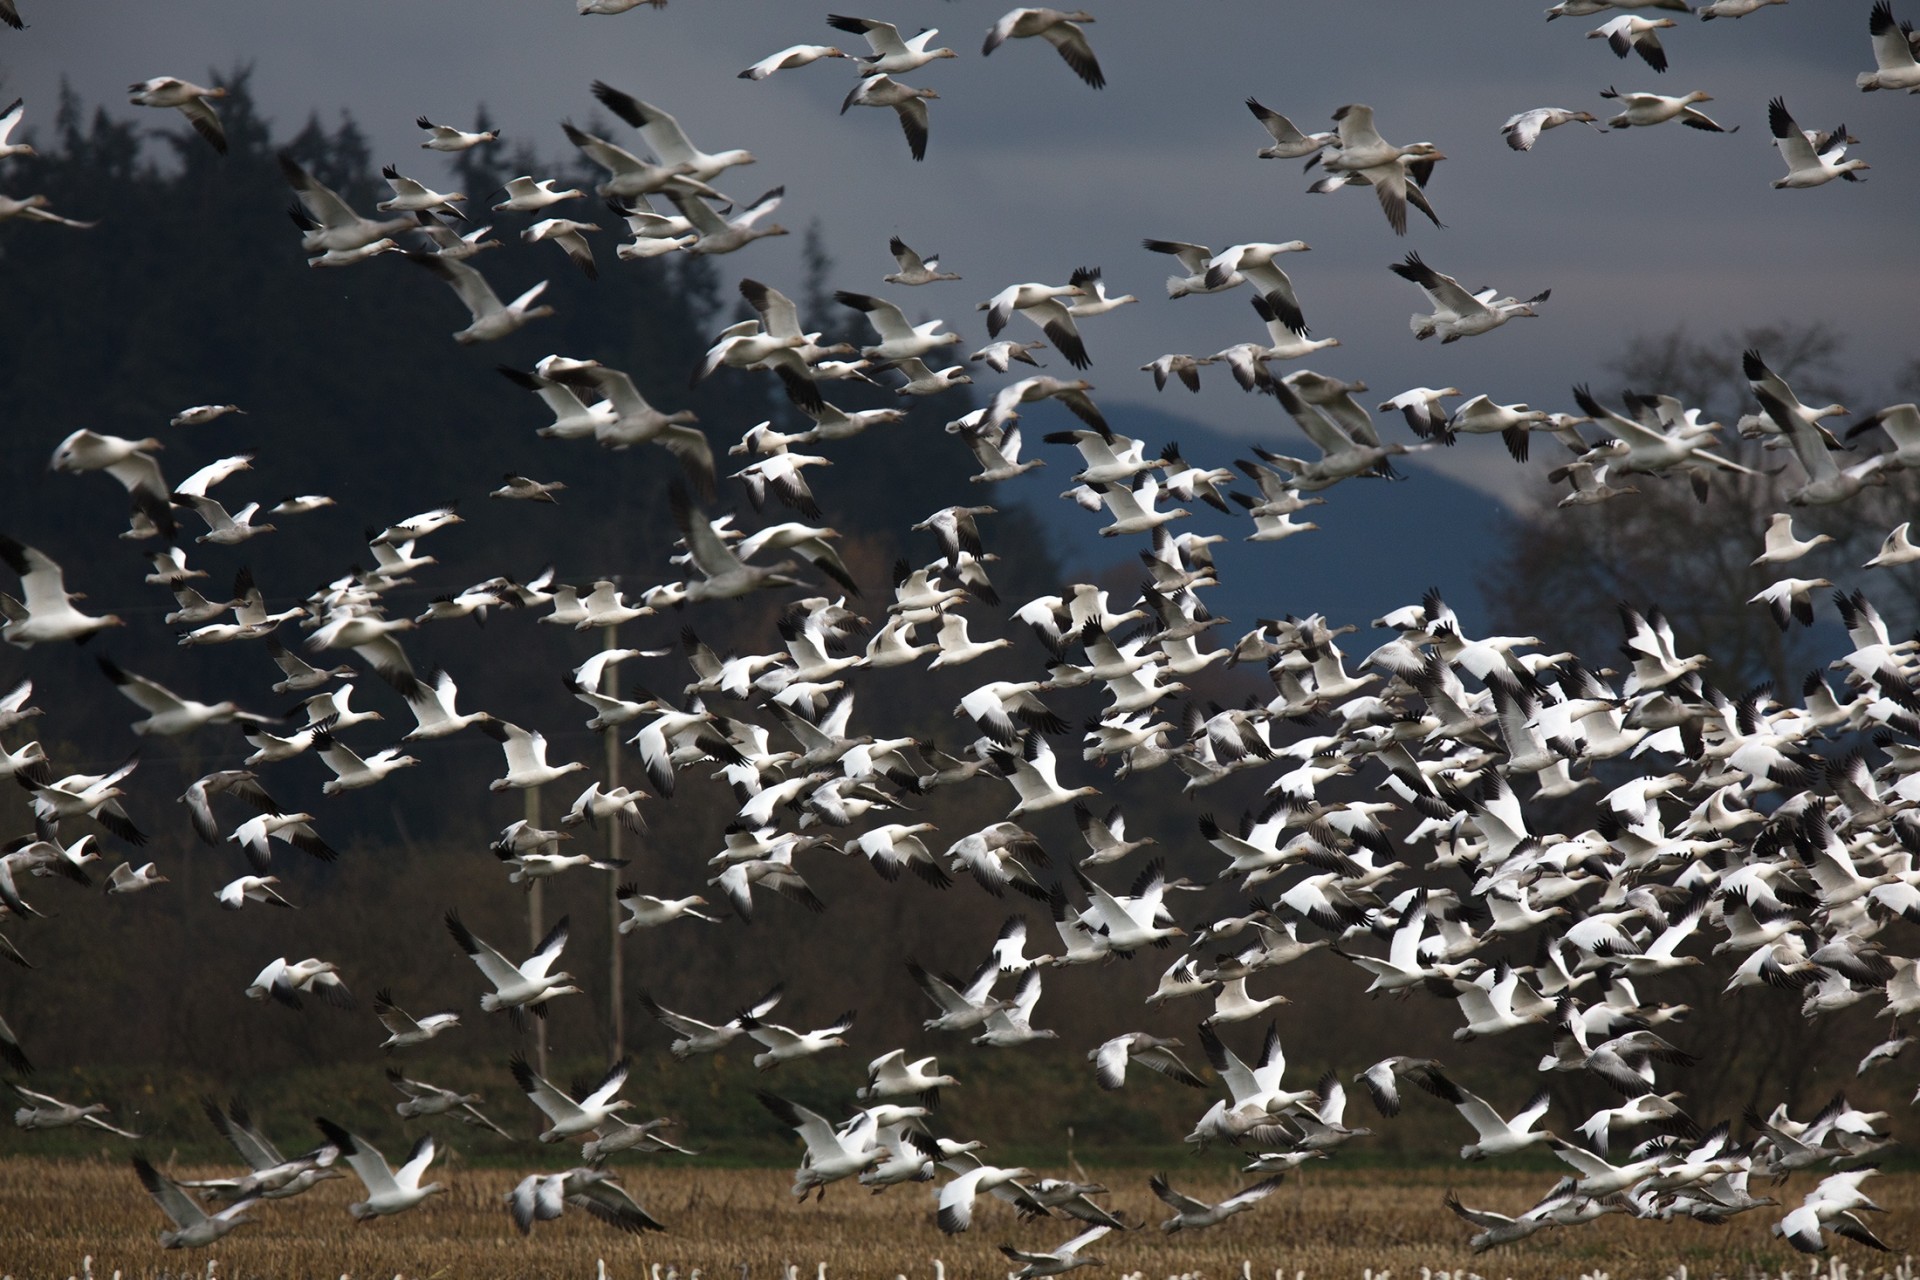 snow-geese in flight